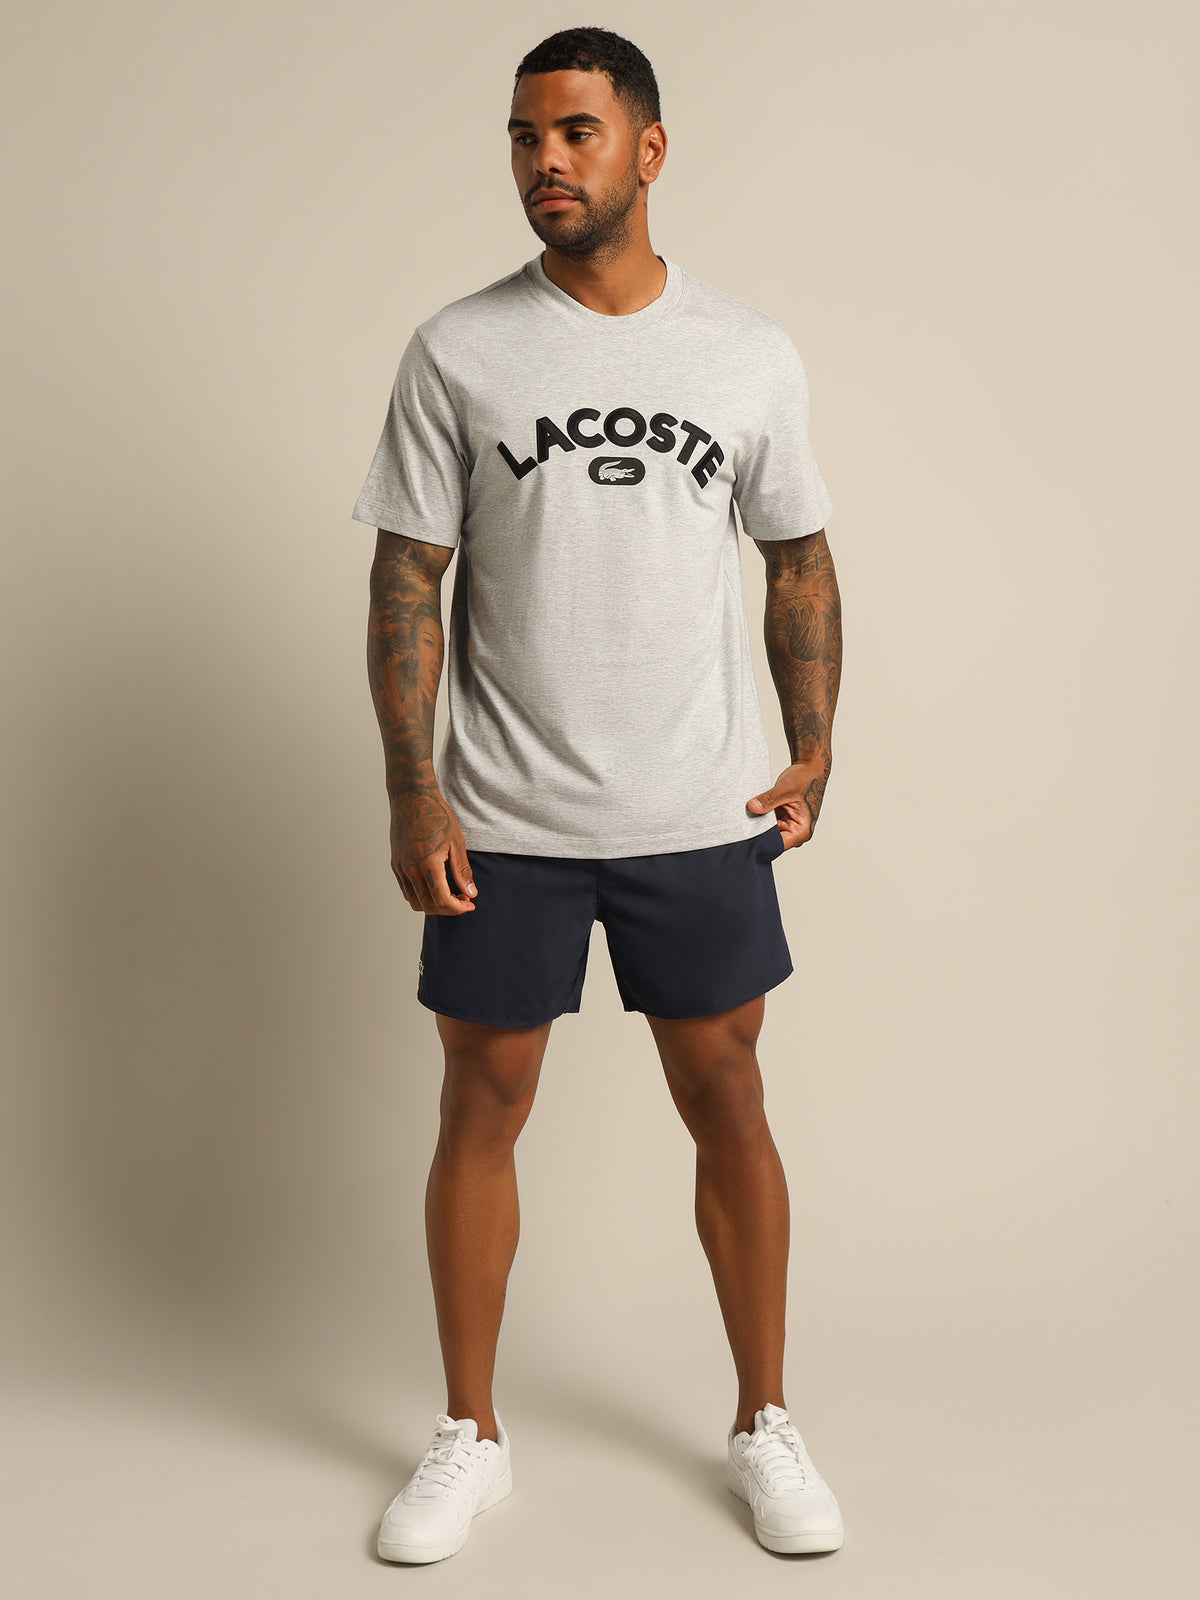 Croc Wording T-Shirt in Grey